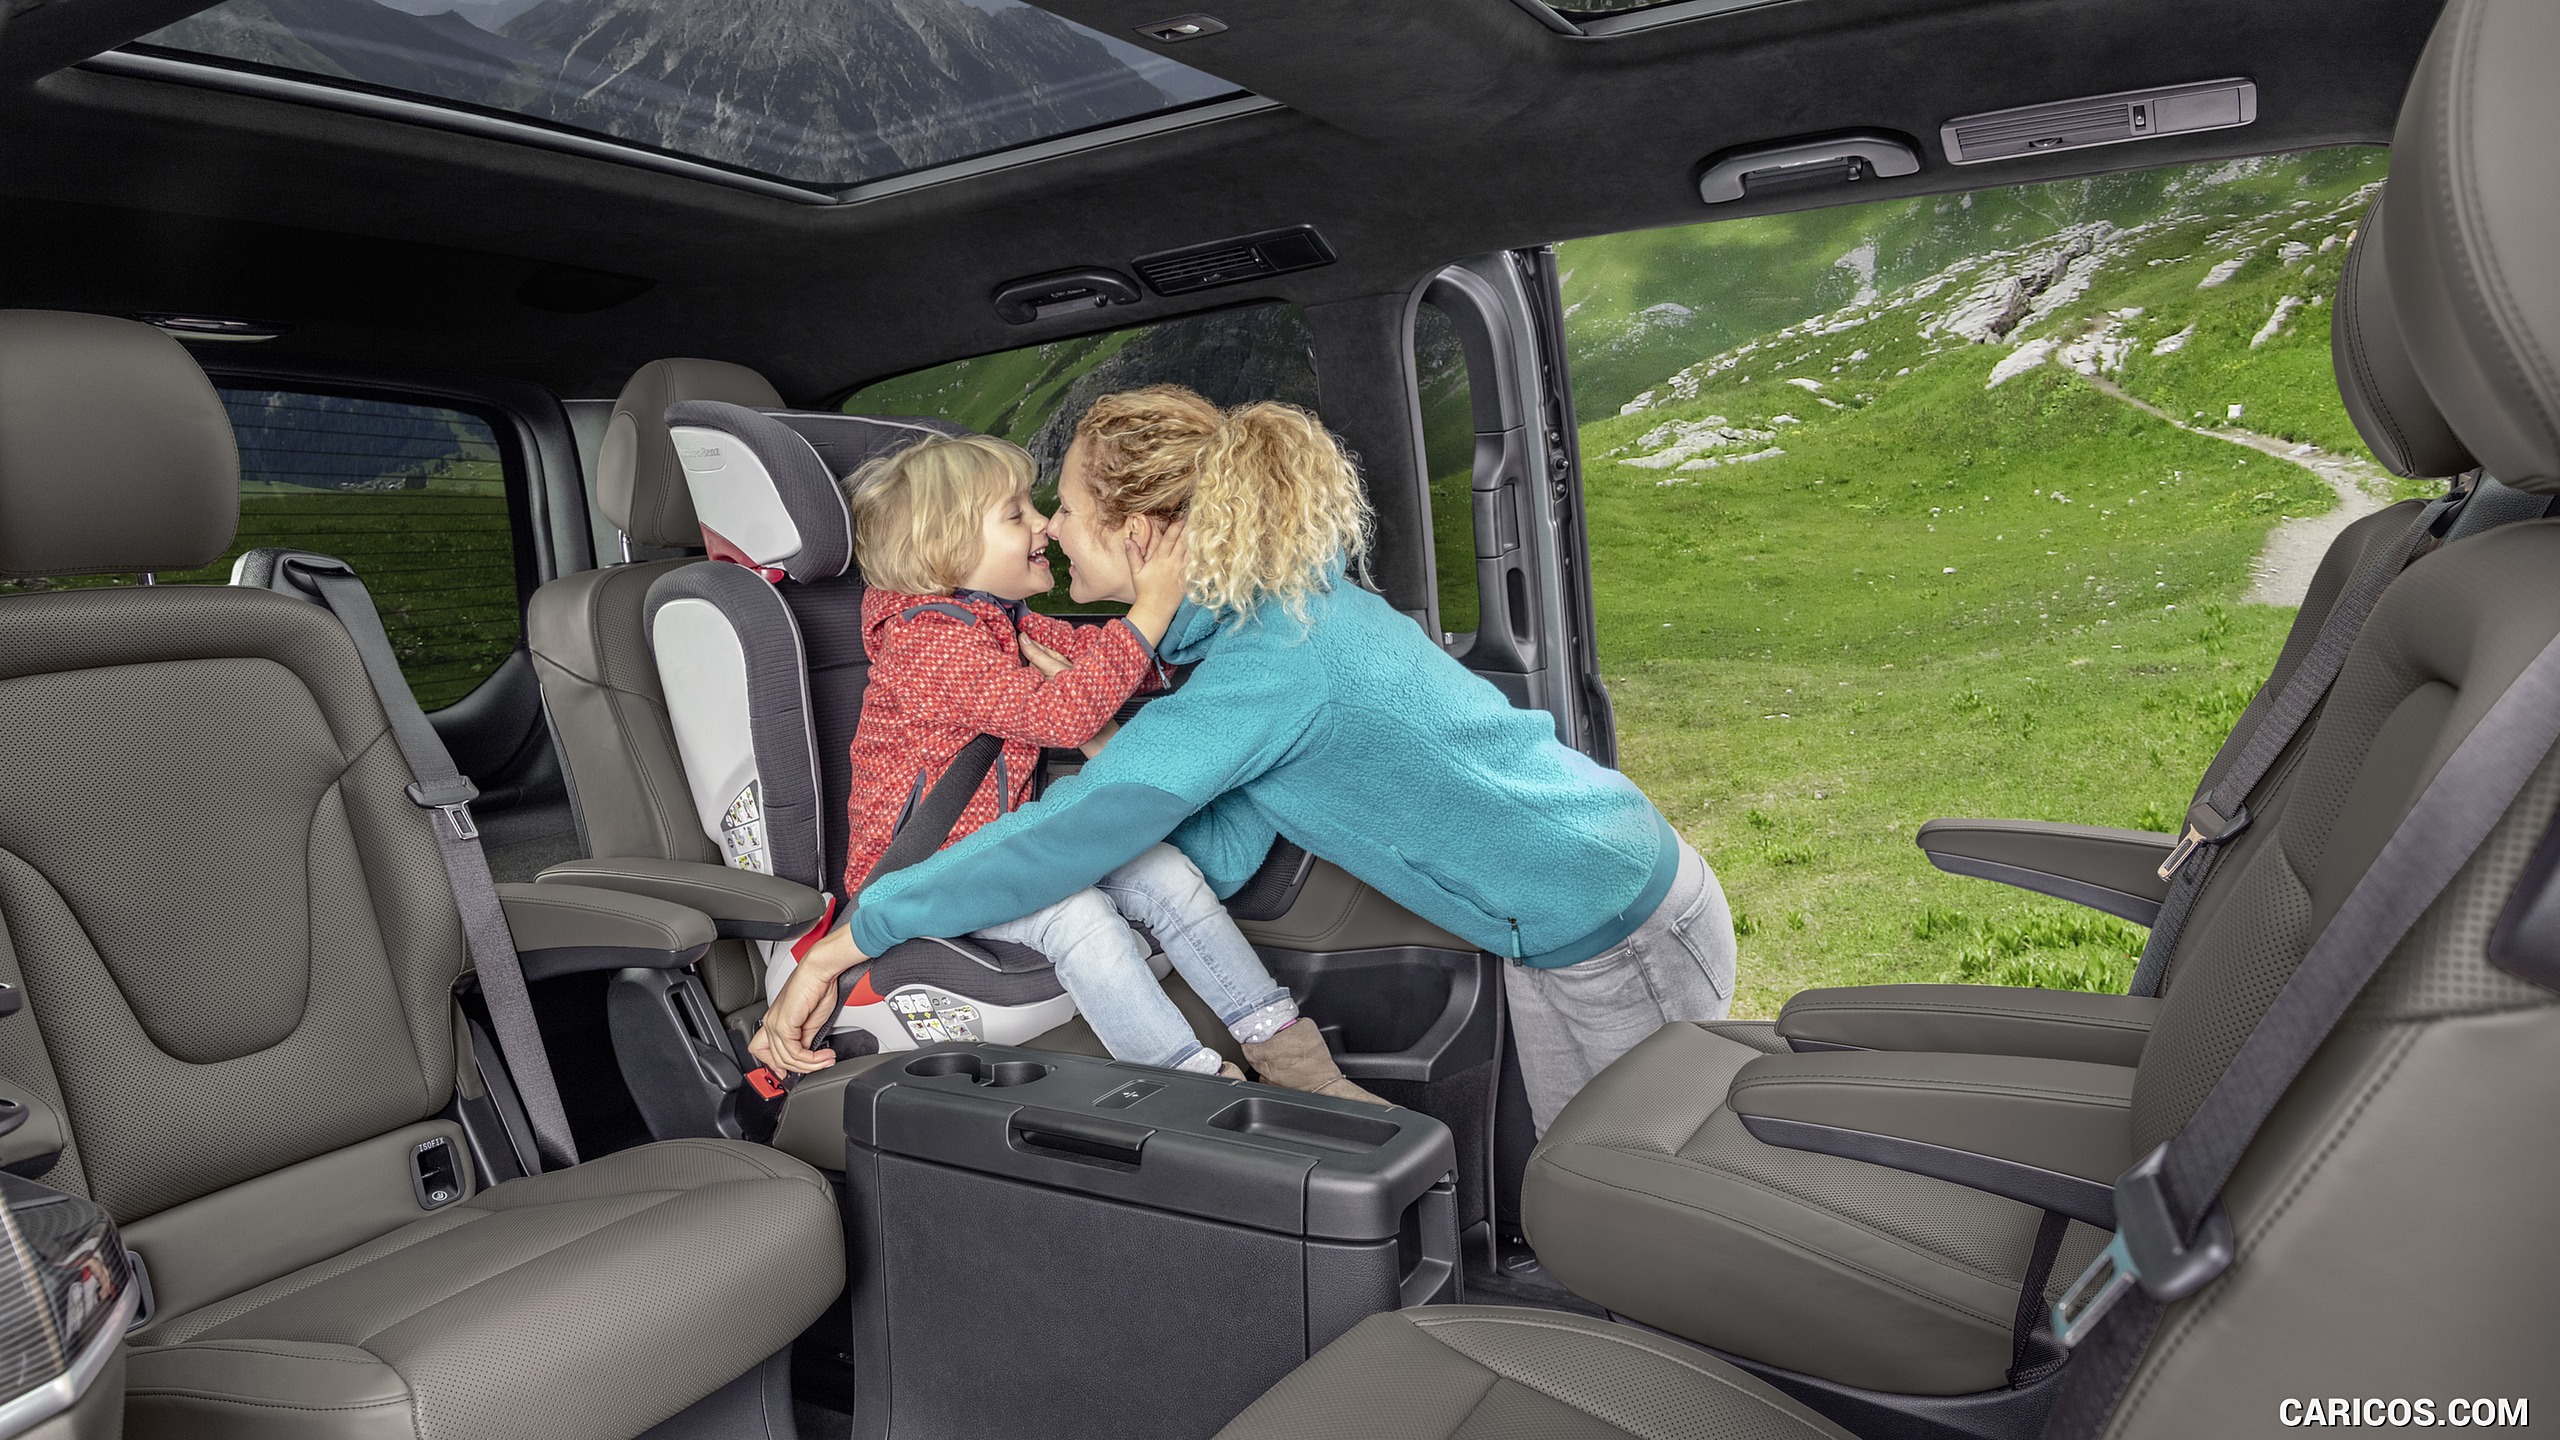 2019 Mercedes Benz V Class Exclusive Line Interior Seats Hd